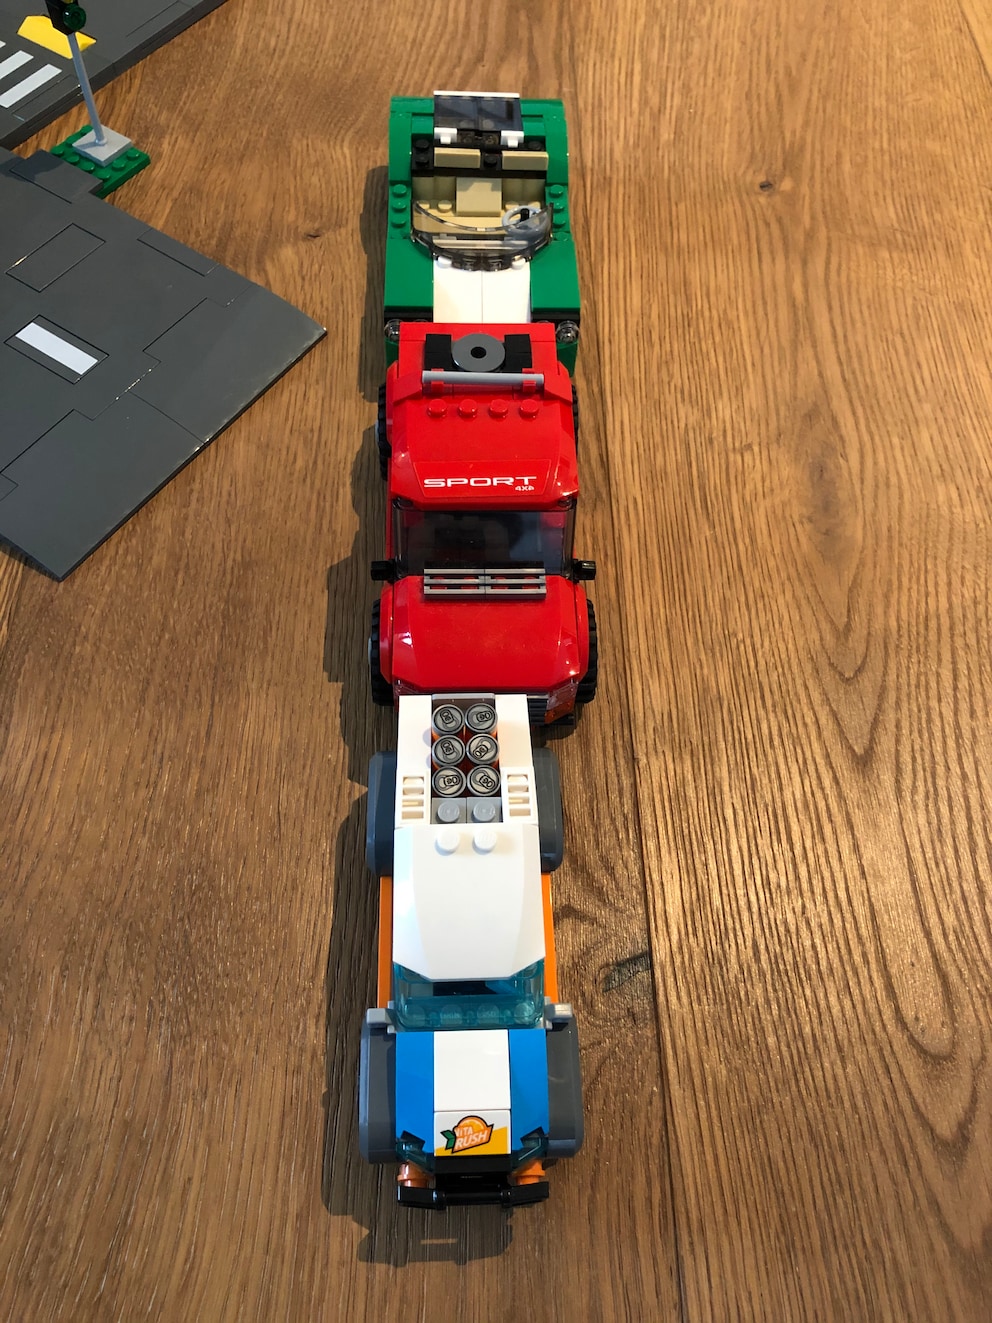 Unterschiedlich breite Lego-Fahrzeuge. Vorne das neueste Modell, das Sponsoren-Auto aus dem Skatepark-Set.